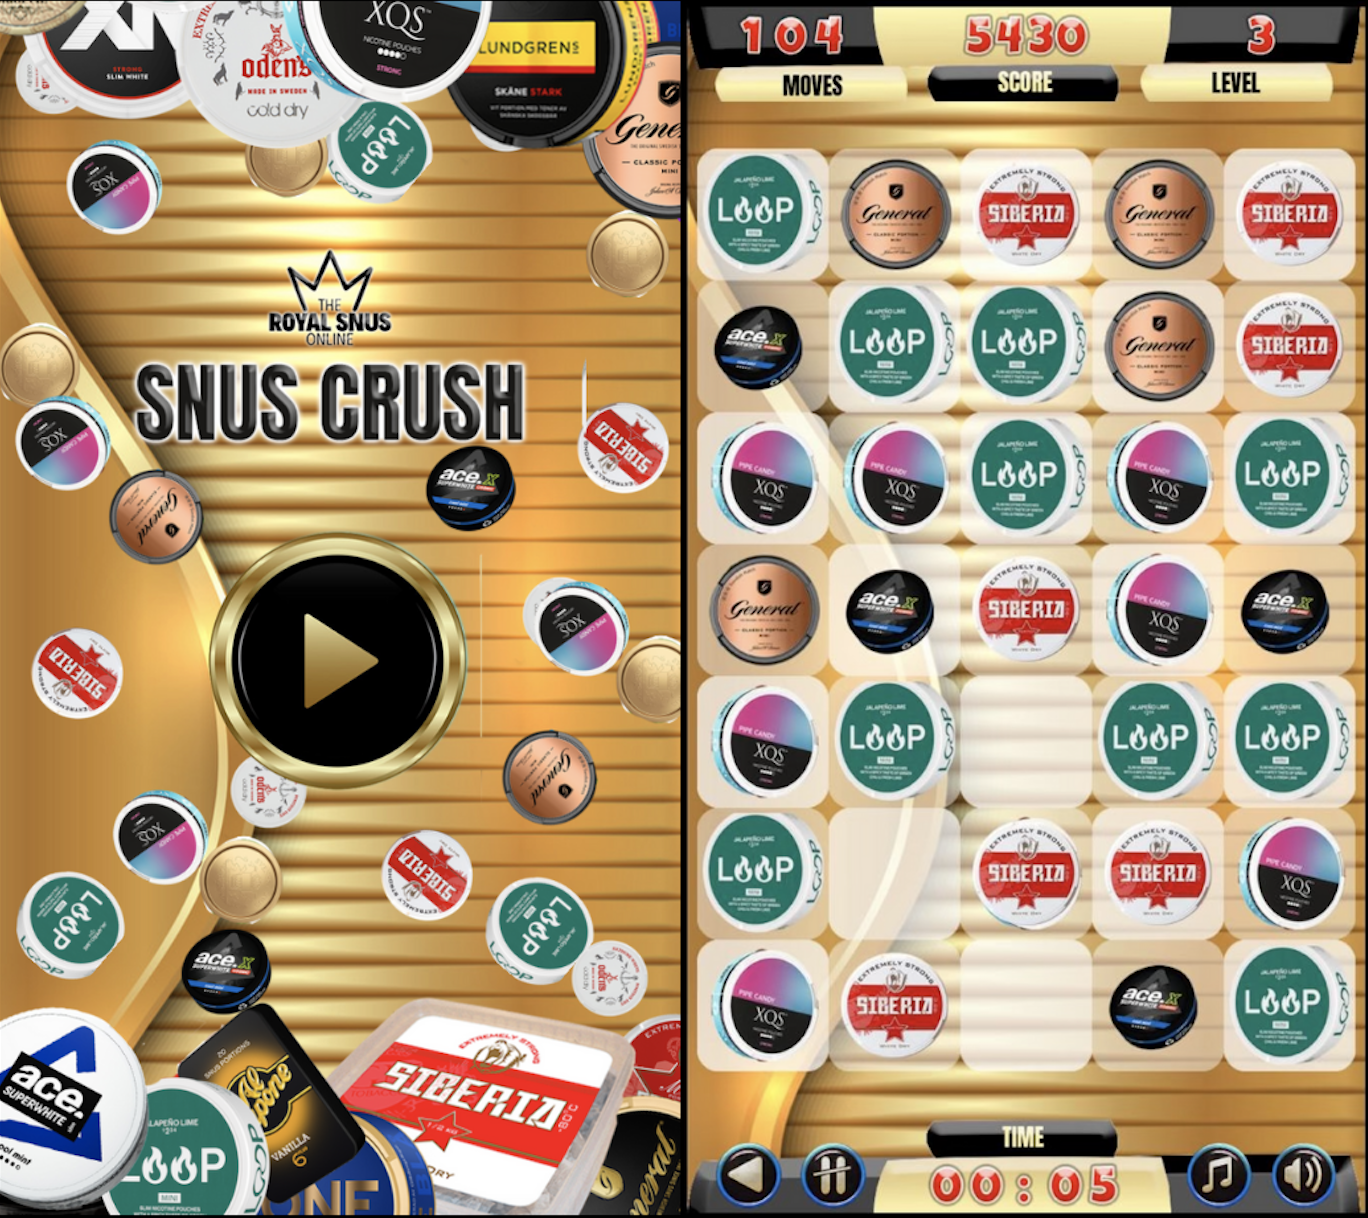 Play Snus Crush Game